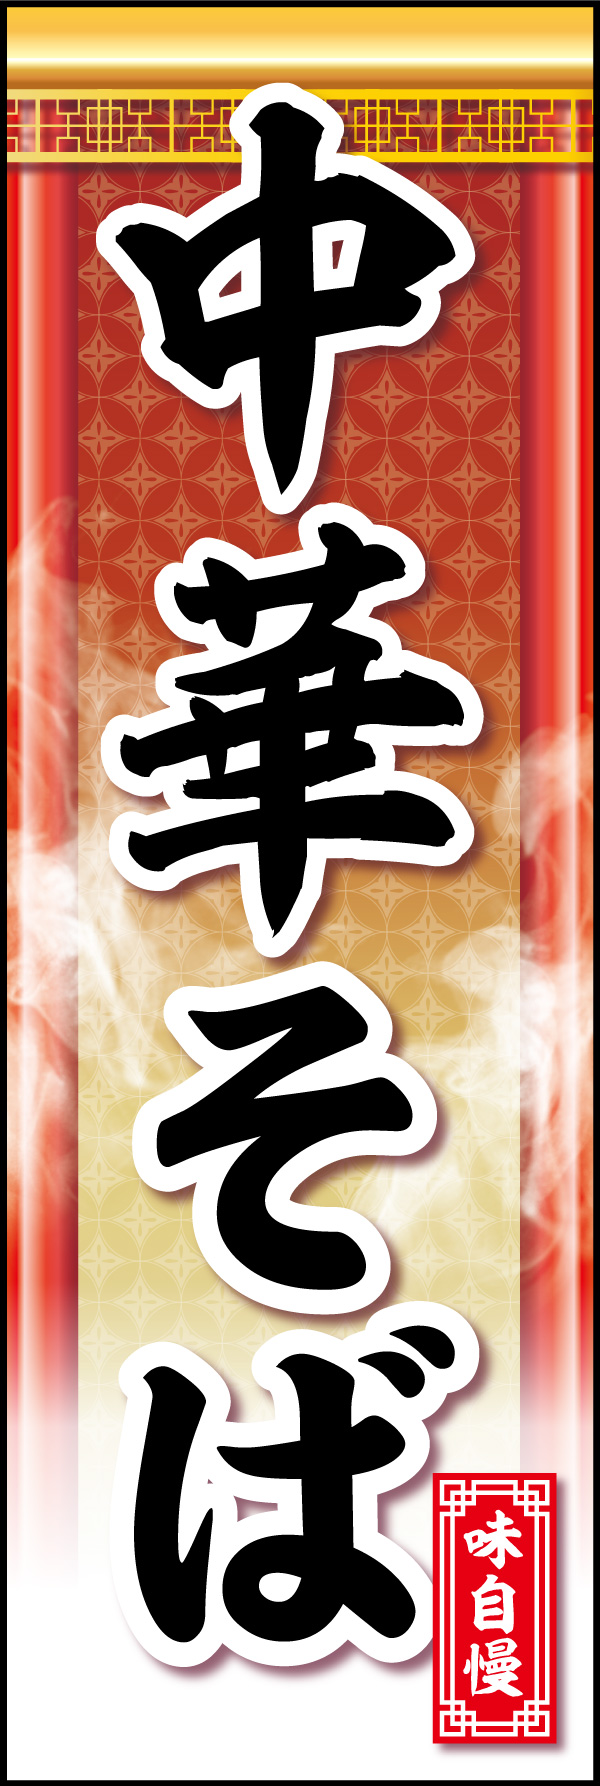 中華そば 06 「中華そば」ののぼりです。中華風装飾で品のある中華そばを表現してみました。(Y.M)